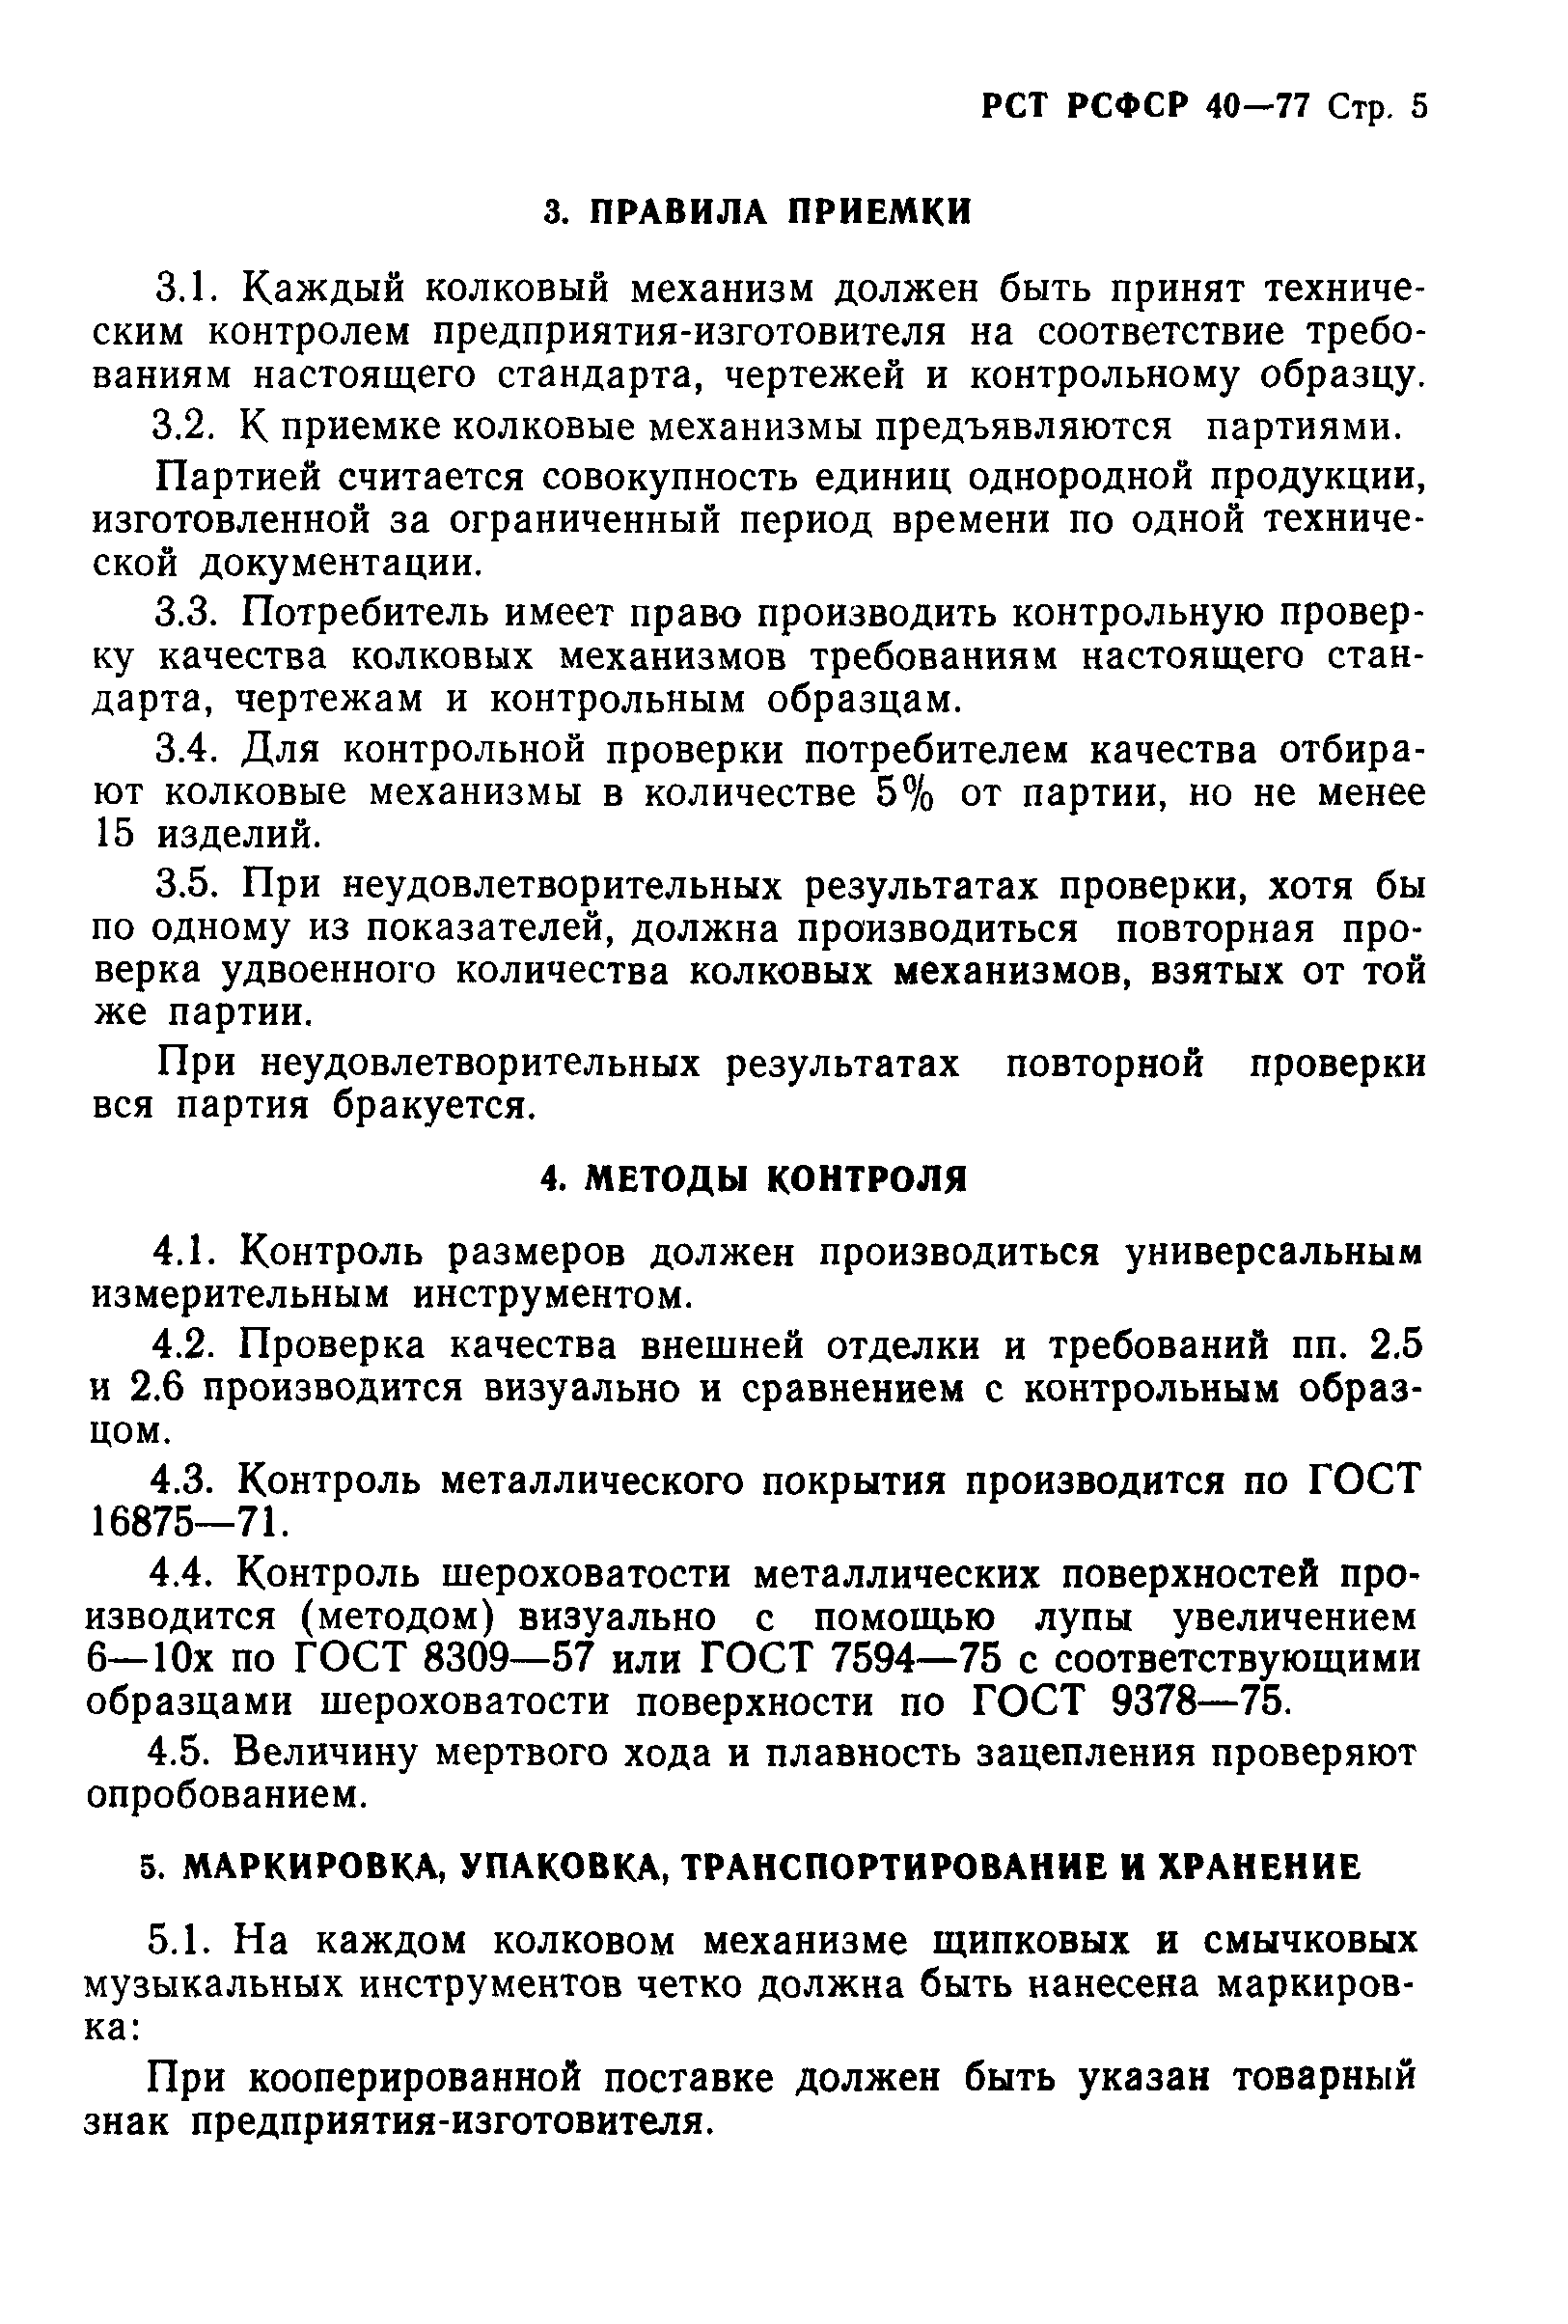 РСТ РСФСР 40-77